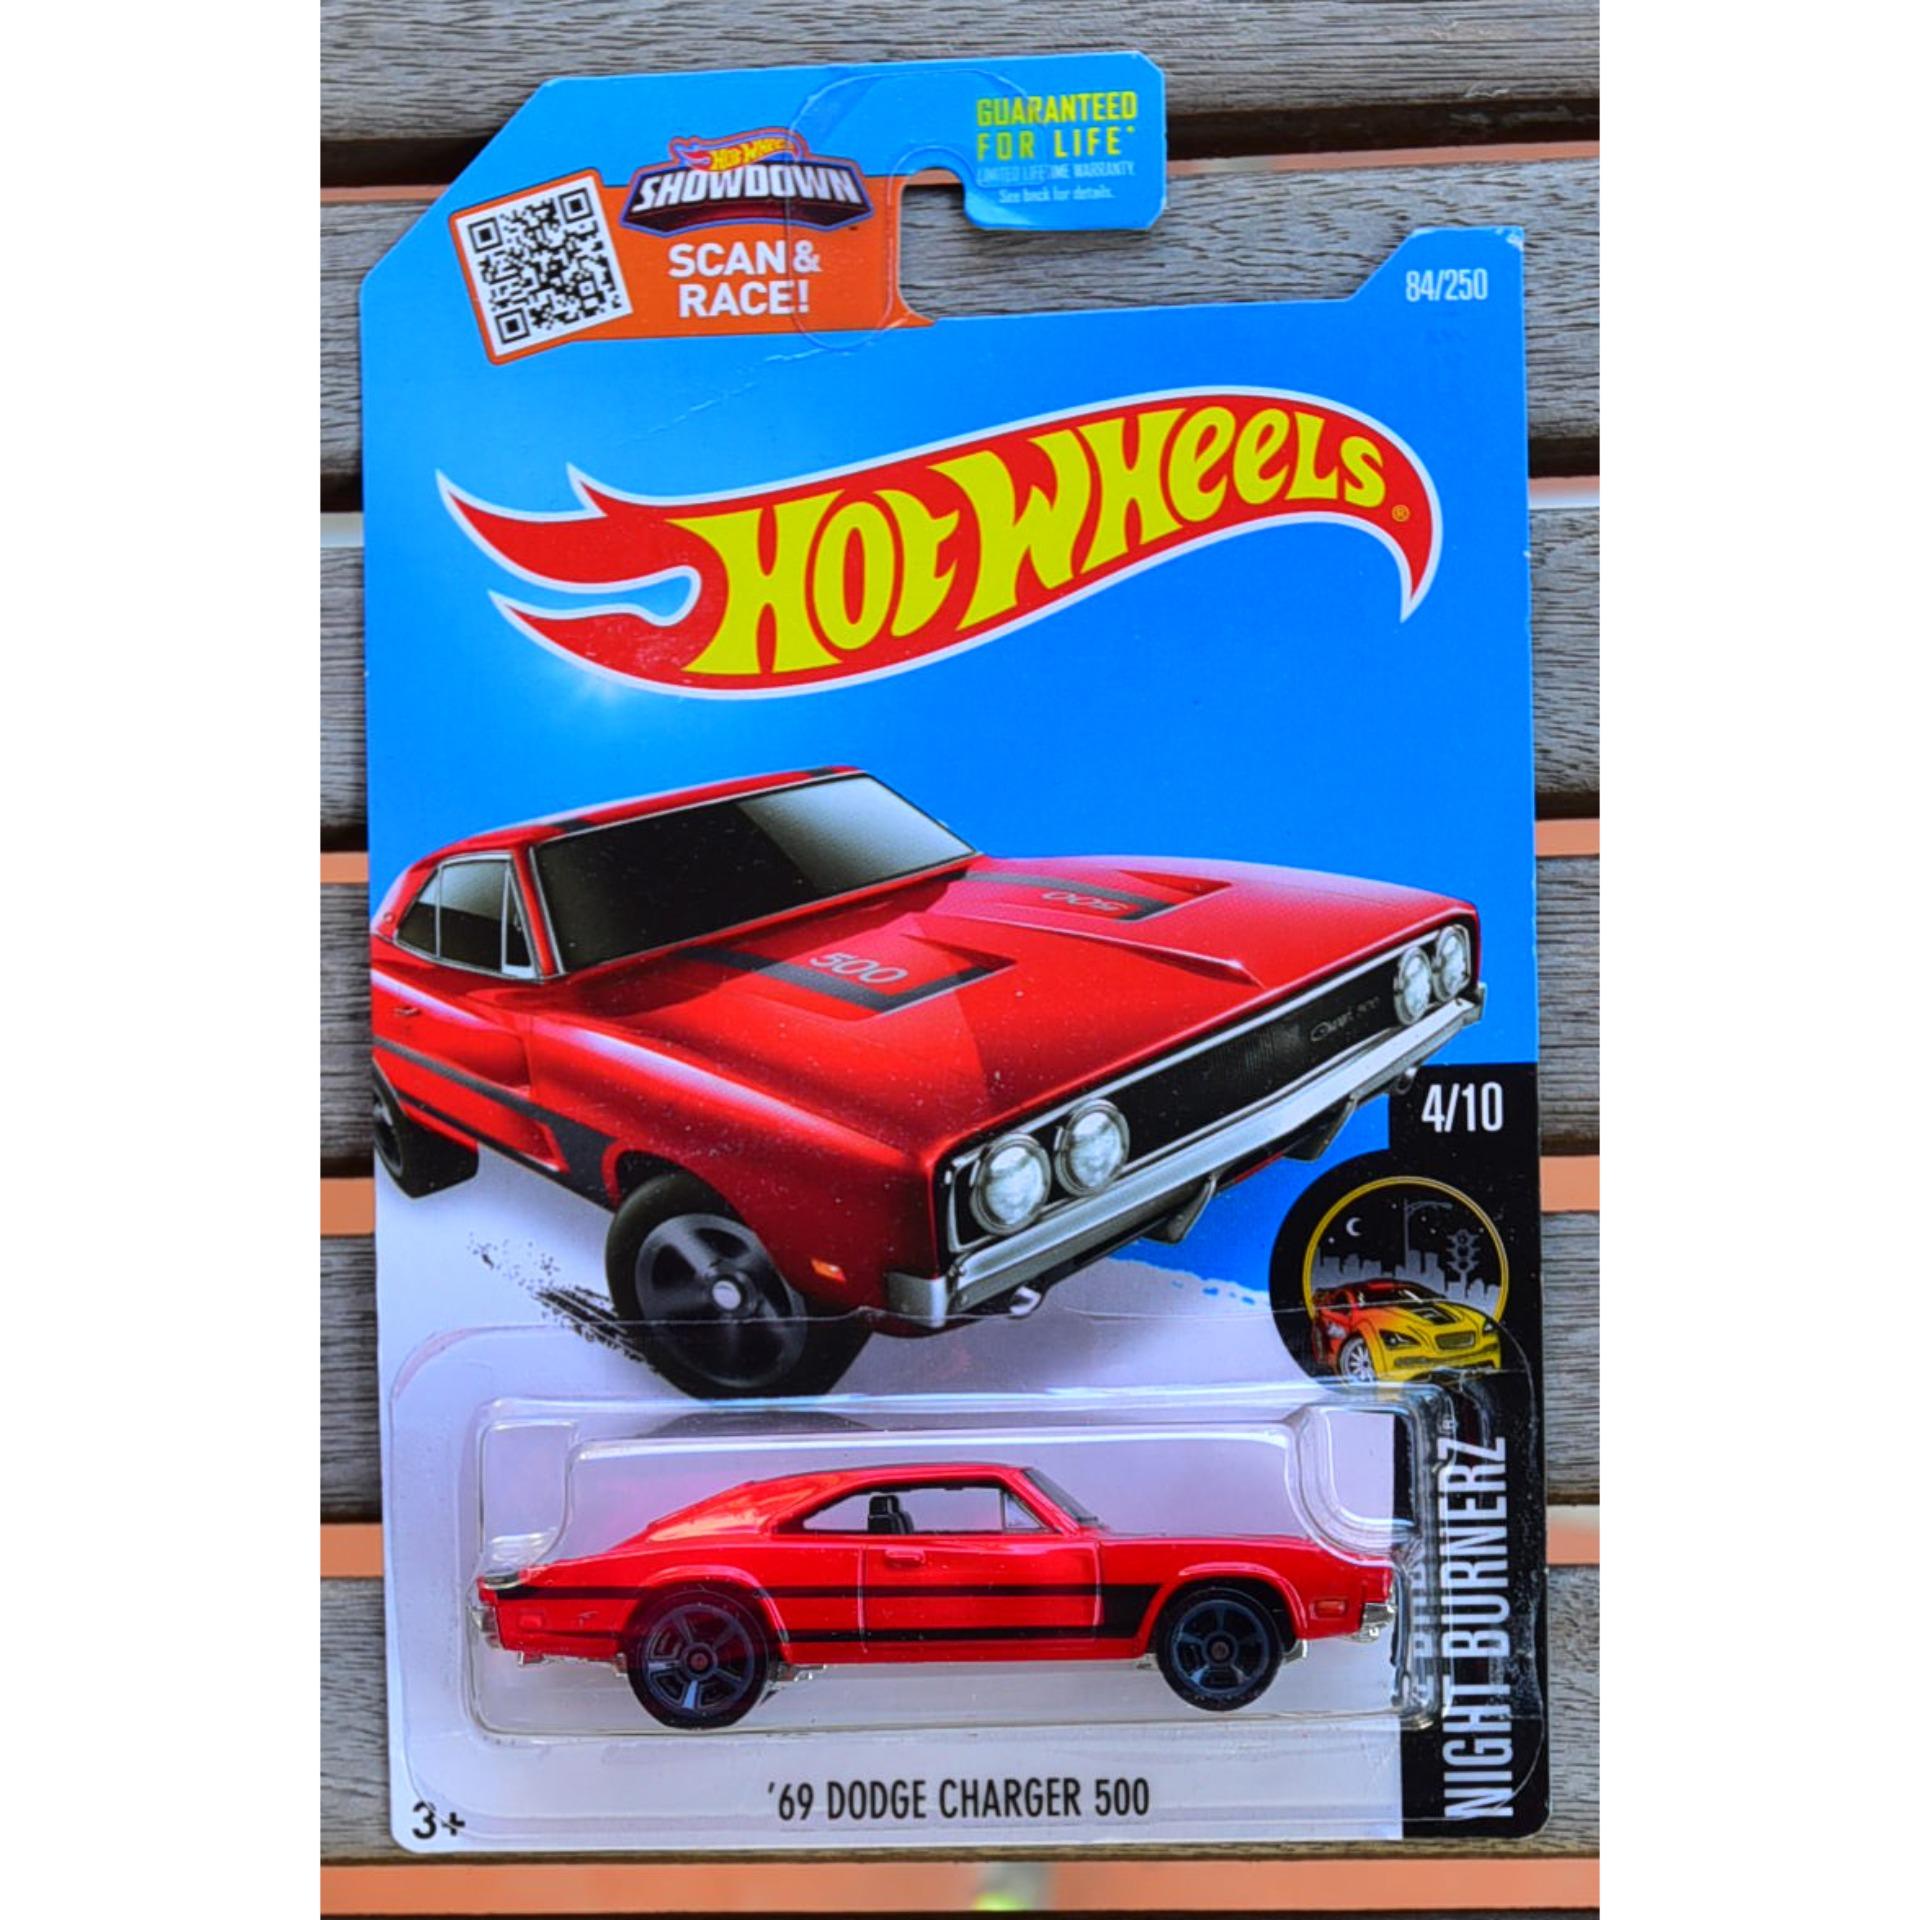 Ô tô mô hình tỉ lệ 1:64 Hot Wheels '69 Dodge Charger 500 84/250 ( màu đỏ )  